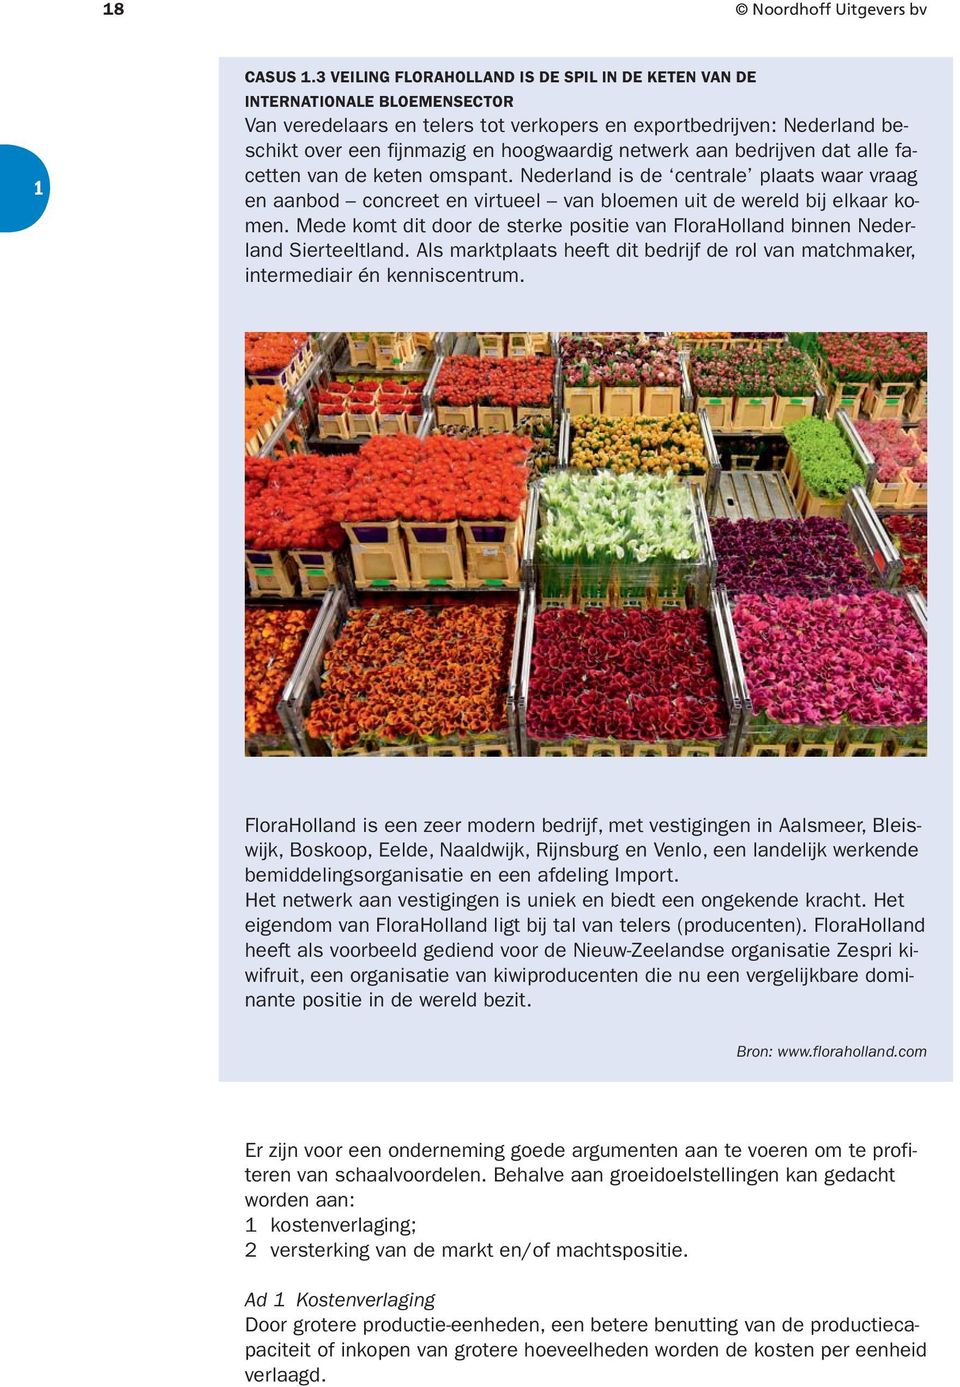 netwerk aan bedrijven dat alle facetten van de keten omspant. Nederland is de centrale plaats waar vraag en aanbod concreet en virtueel van bloemen uit de wereld bij elkaar komen.